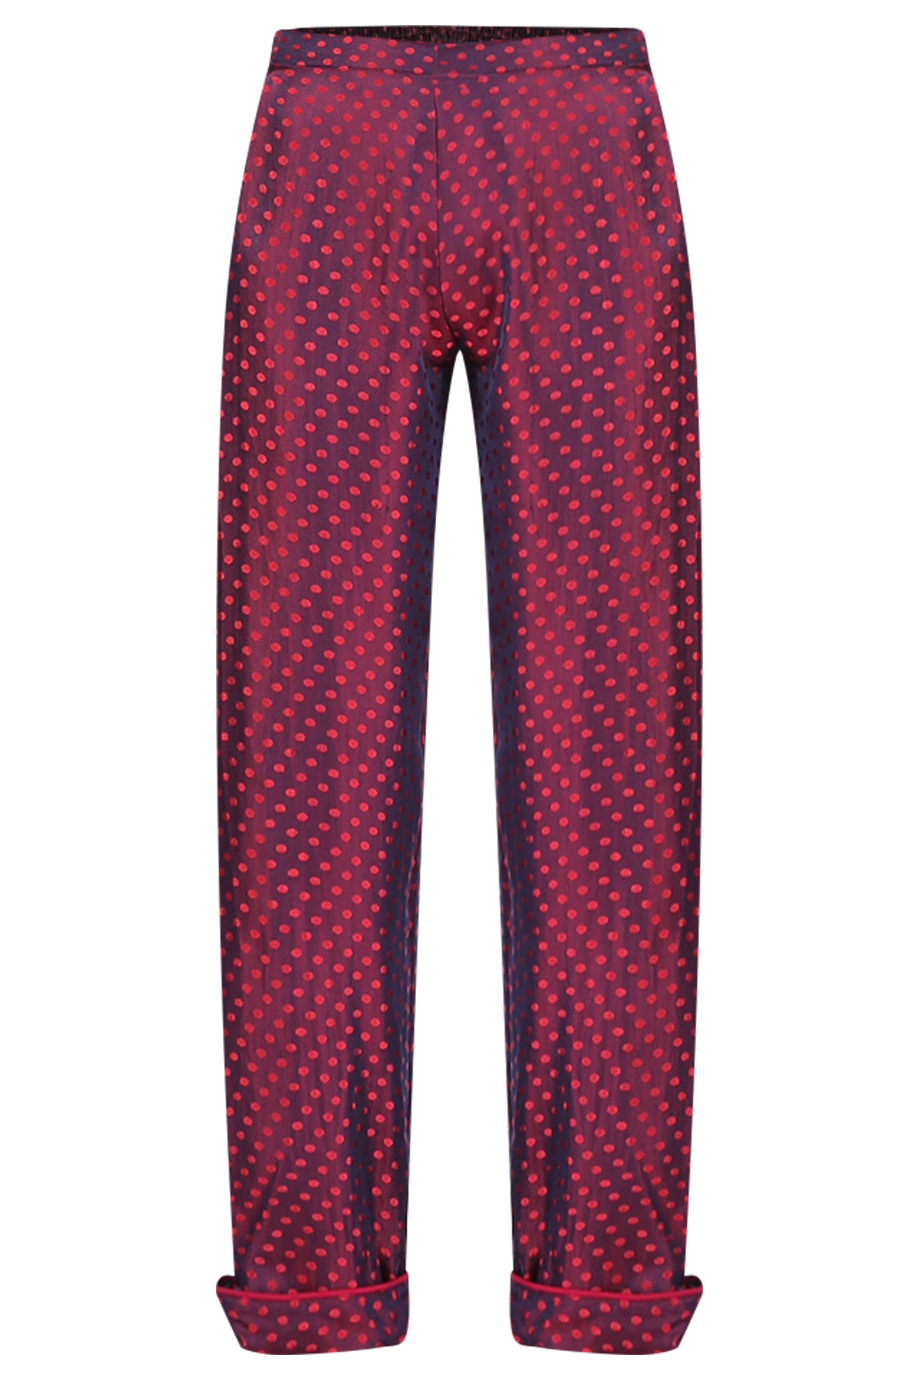 Quần ngủ dài gập gấu 100% lụa tơ tằm Clacie No.1 Silk Pajama Long Pants/ Plum Dots